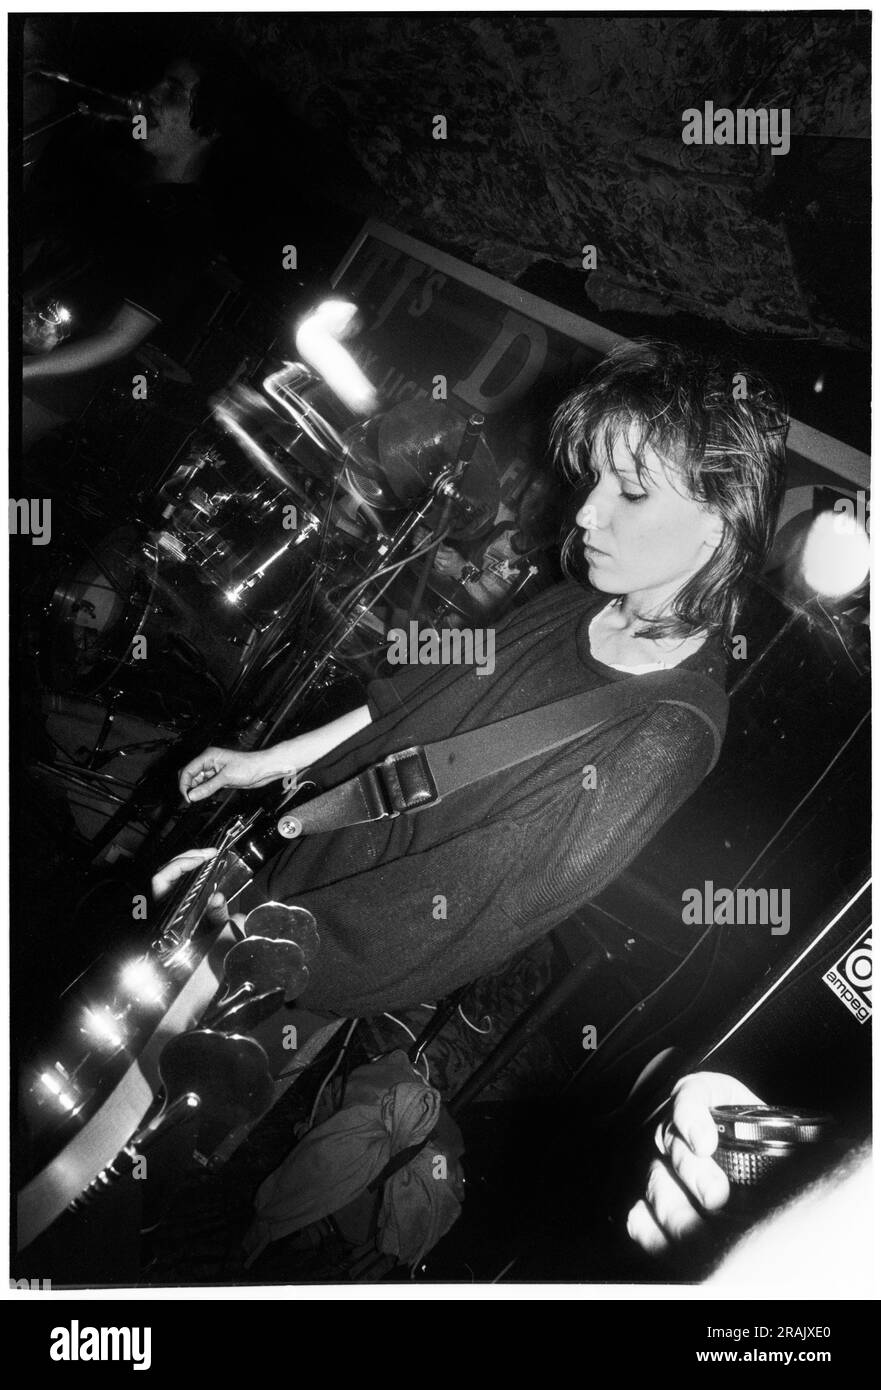 ELASTICA, GIOVANE, EARLY GIG, 1994: Annie Holland bassista degli elastica che suonava un concerto caotico molto precoce ai leggendari TJs di Newport, Galles, Regno Unito, il 23 febbraio 1994. Foto: Rob Watkins. INFO: Elastica, un gruppo alternative rock britannico formatosi nel 1992, ha guadagnato consensi con il loro omonimo album di debutto. Successi come "Connection" hanno mostrato le loro influenze post-punk e New Wave. Guidato da Justine Frischmann, il contributo di elastica all'era Britpop fu significativo. Foto Stock